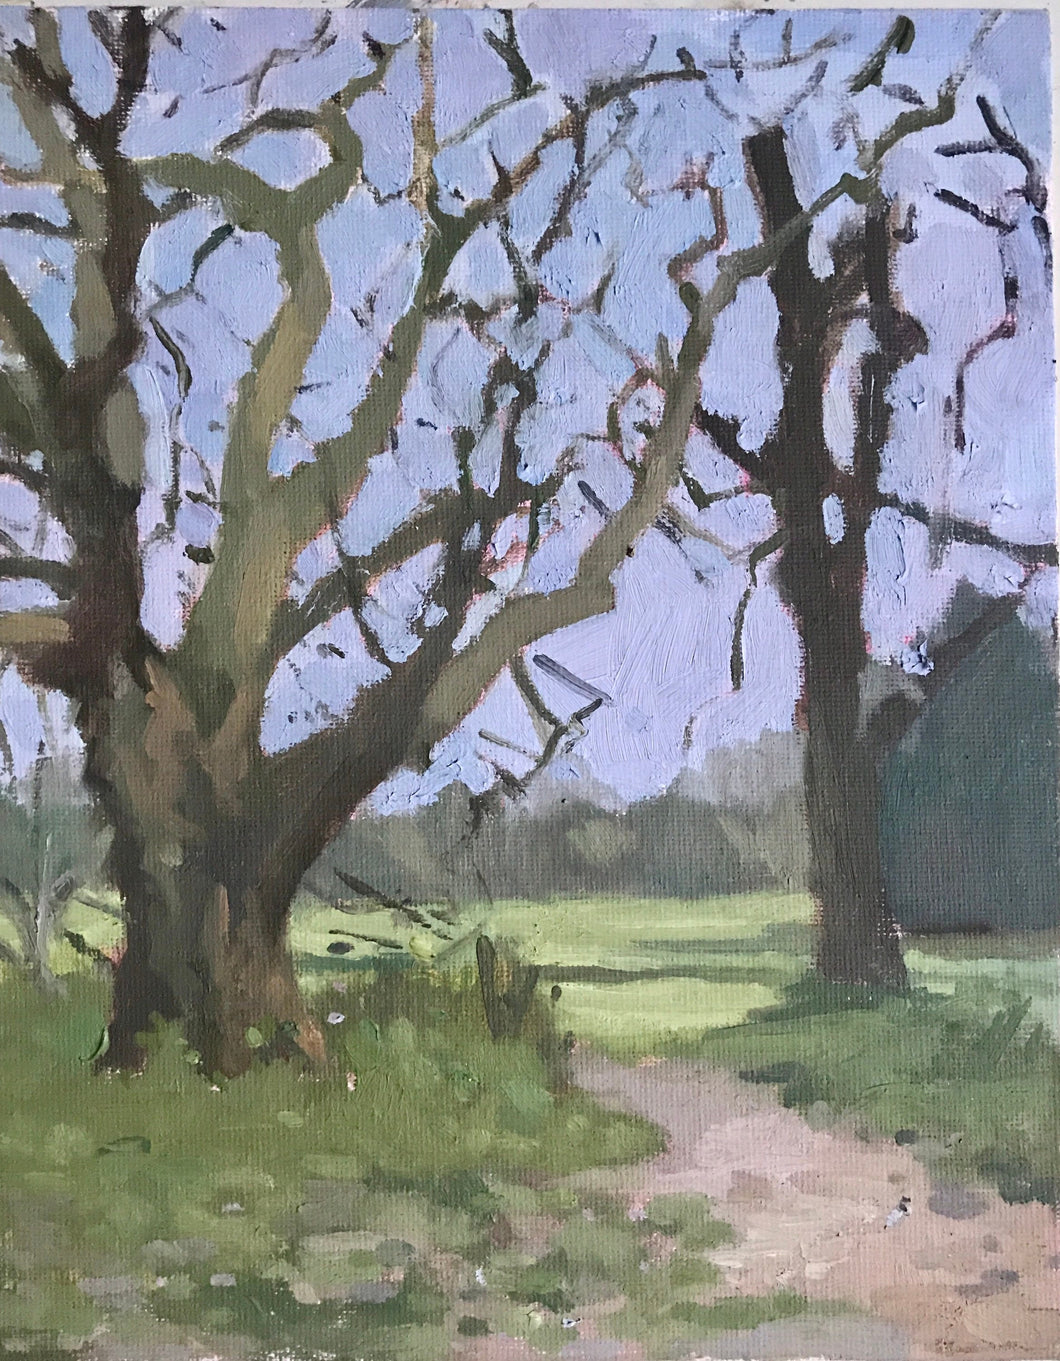 Landscape painting Regent’ Park London Plein Air Painting Oil on Canvas Original London Trees